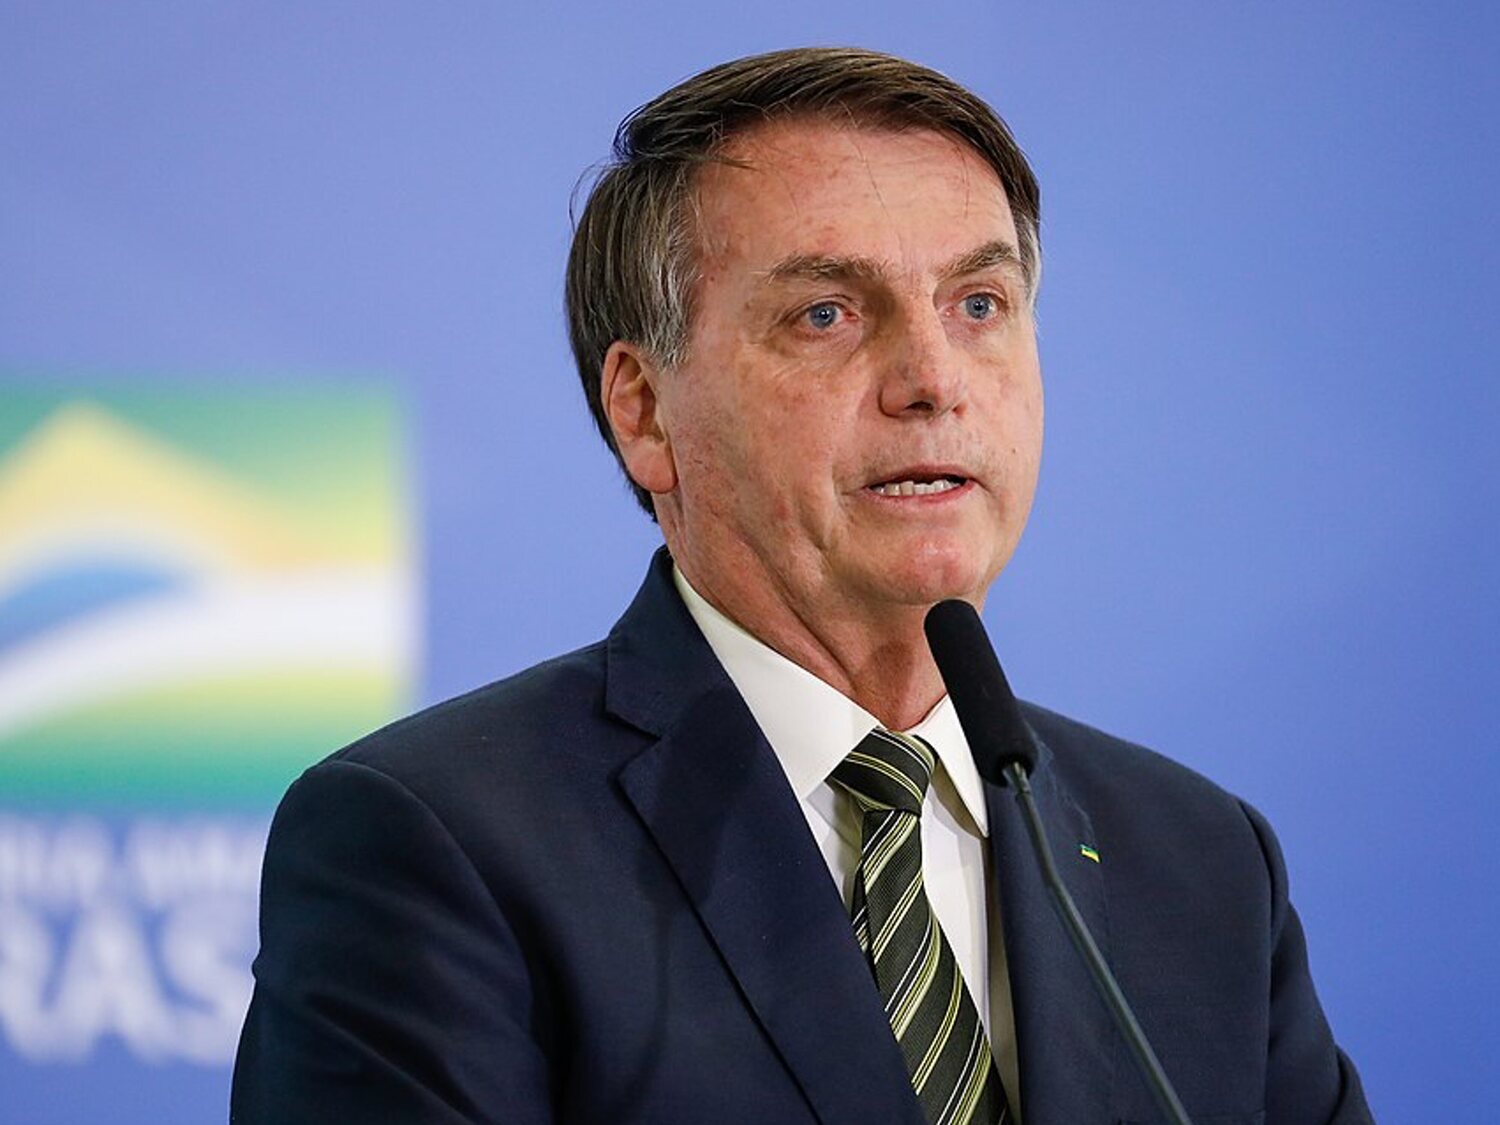 Bolsonaro alega que publicó los vídeos que defendían el fraude electoral por error y bajo los efectos de medicamentos